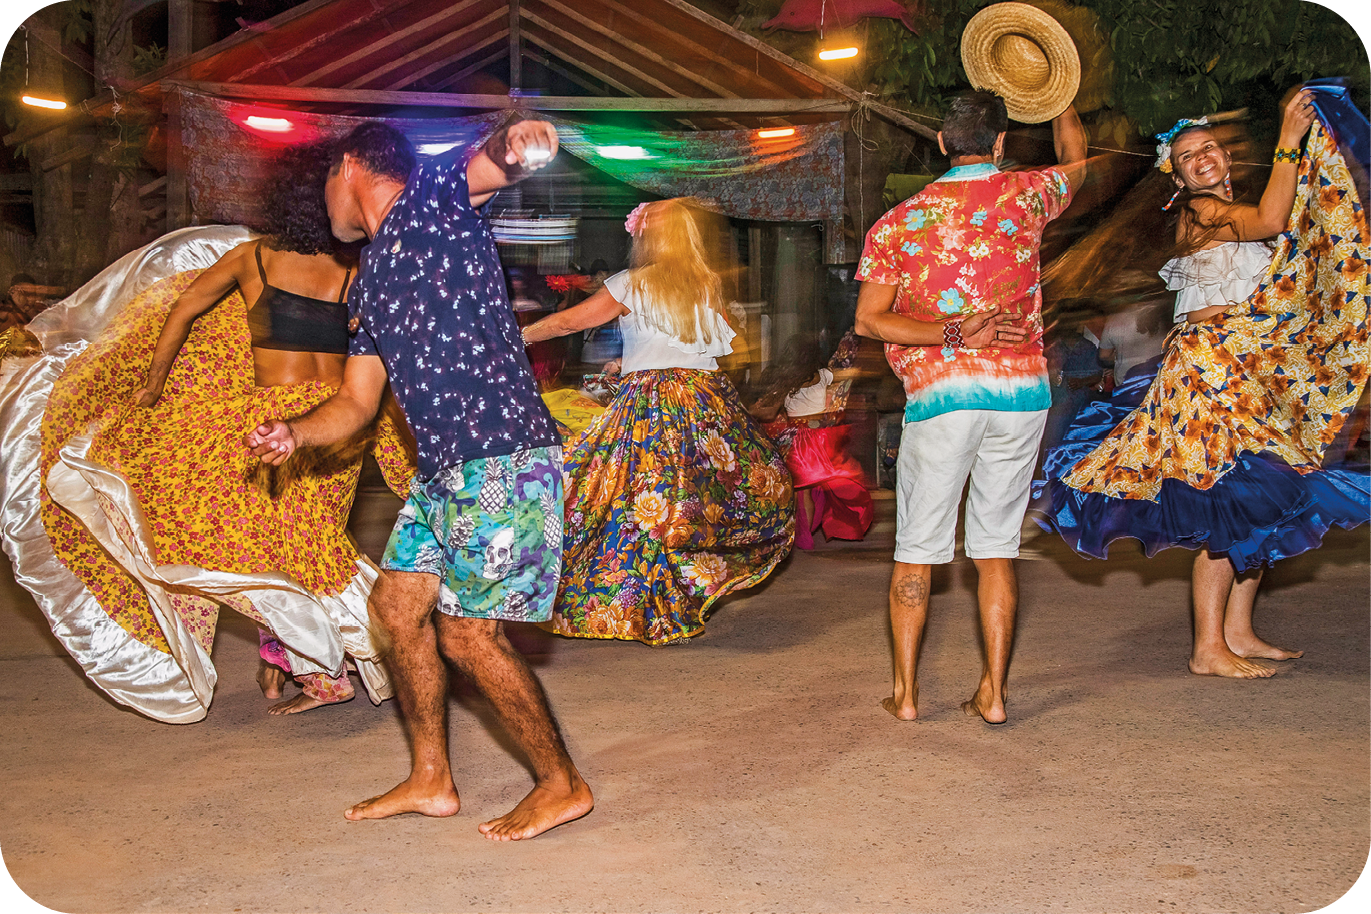 Fotografia. Dois homens usando camisa e shorts e três mulheres usando camisa e saia comprida colorida estão dançando. As mulheres movimentam as saias, um dos homens tira o chapéu e uma delas sorri.